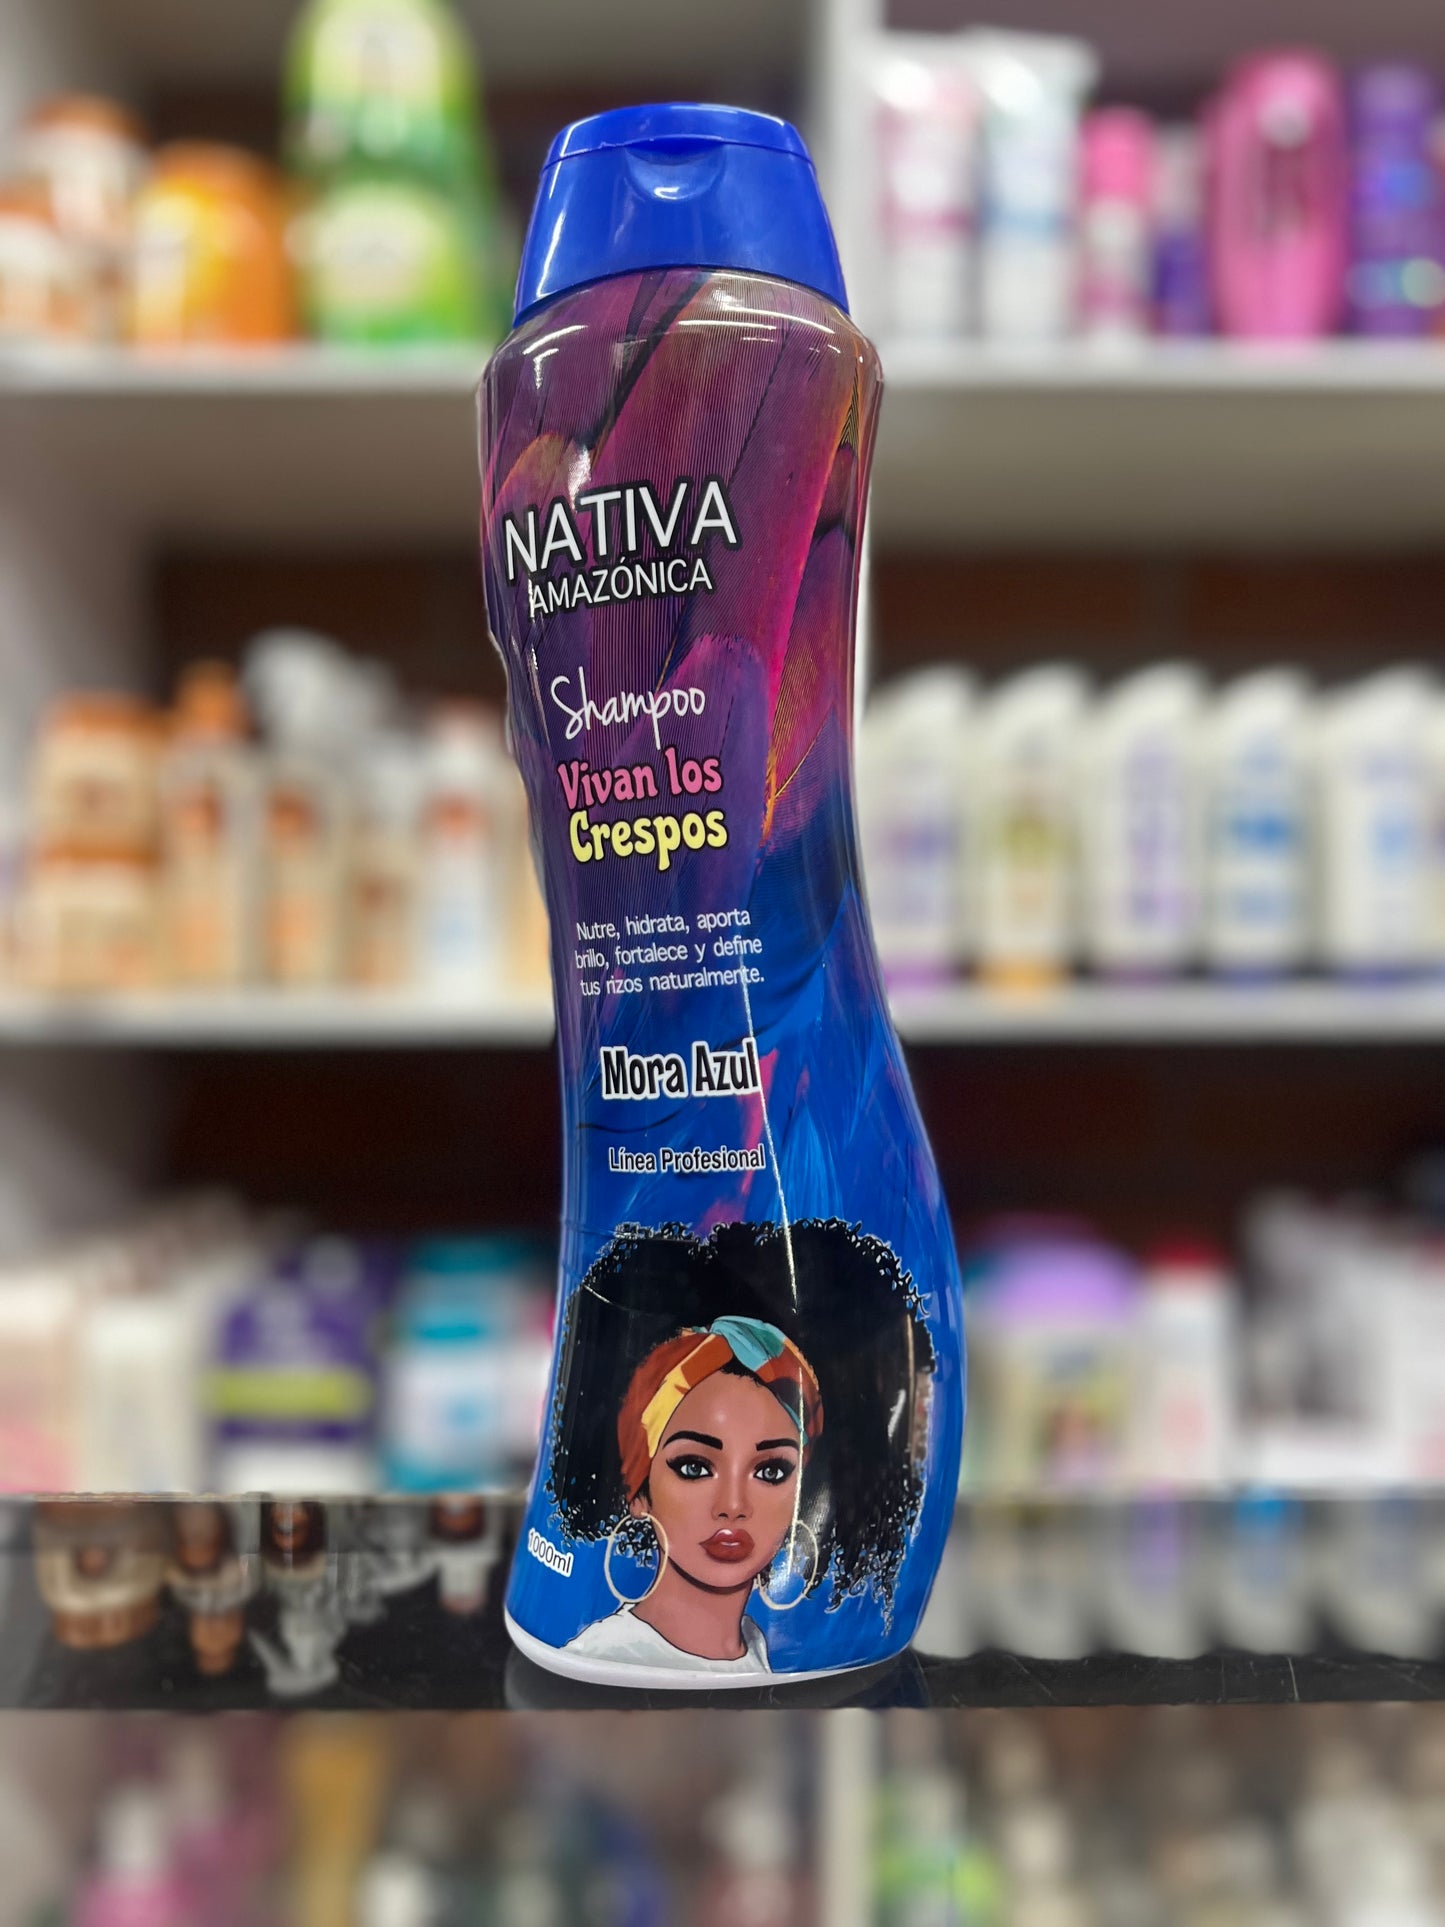 Shampoo vivan los crespos nativa